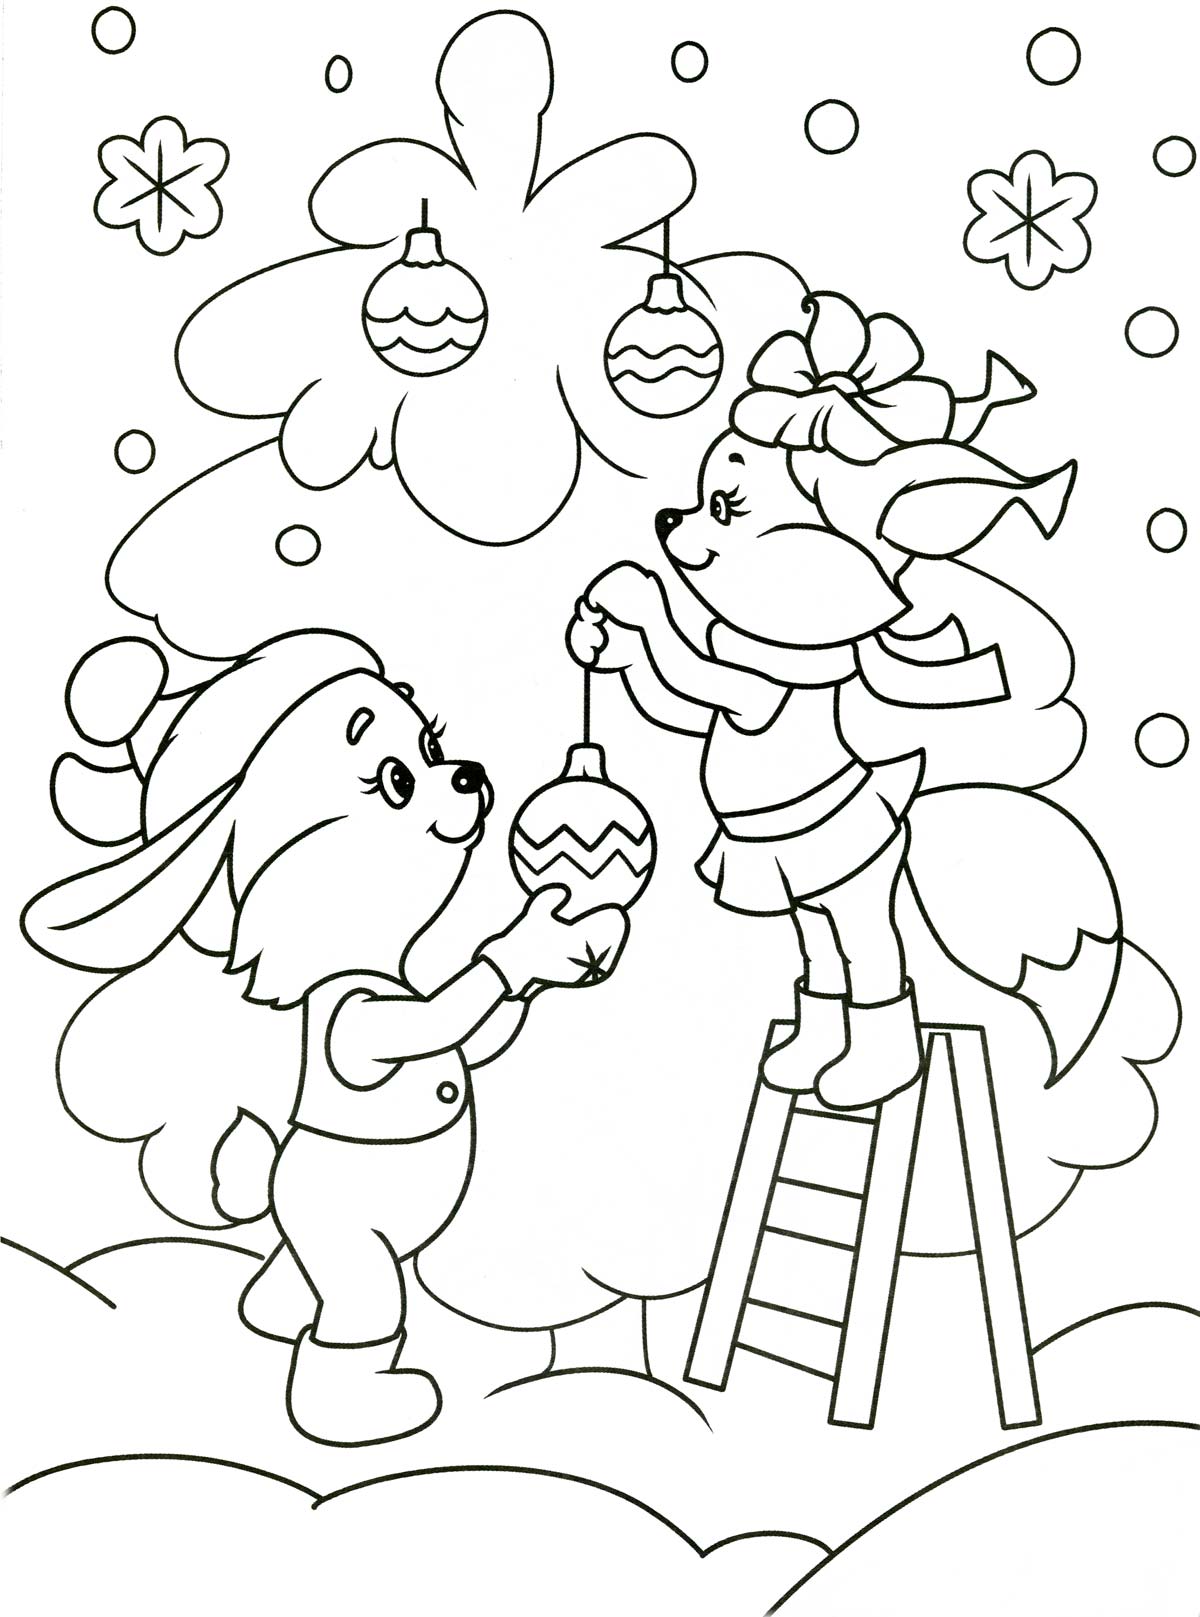 Набор для декорирования Bondibon Новогодняя елочка-раскраска с игрушками